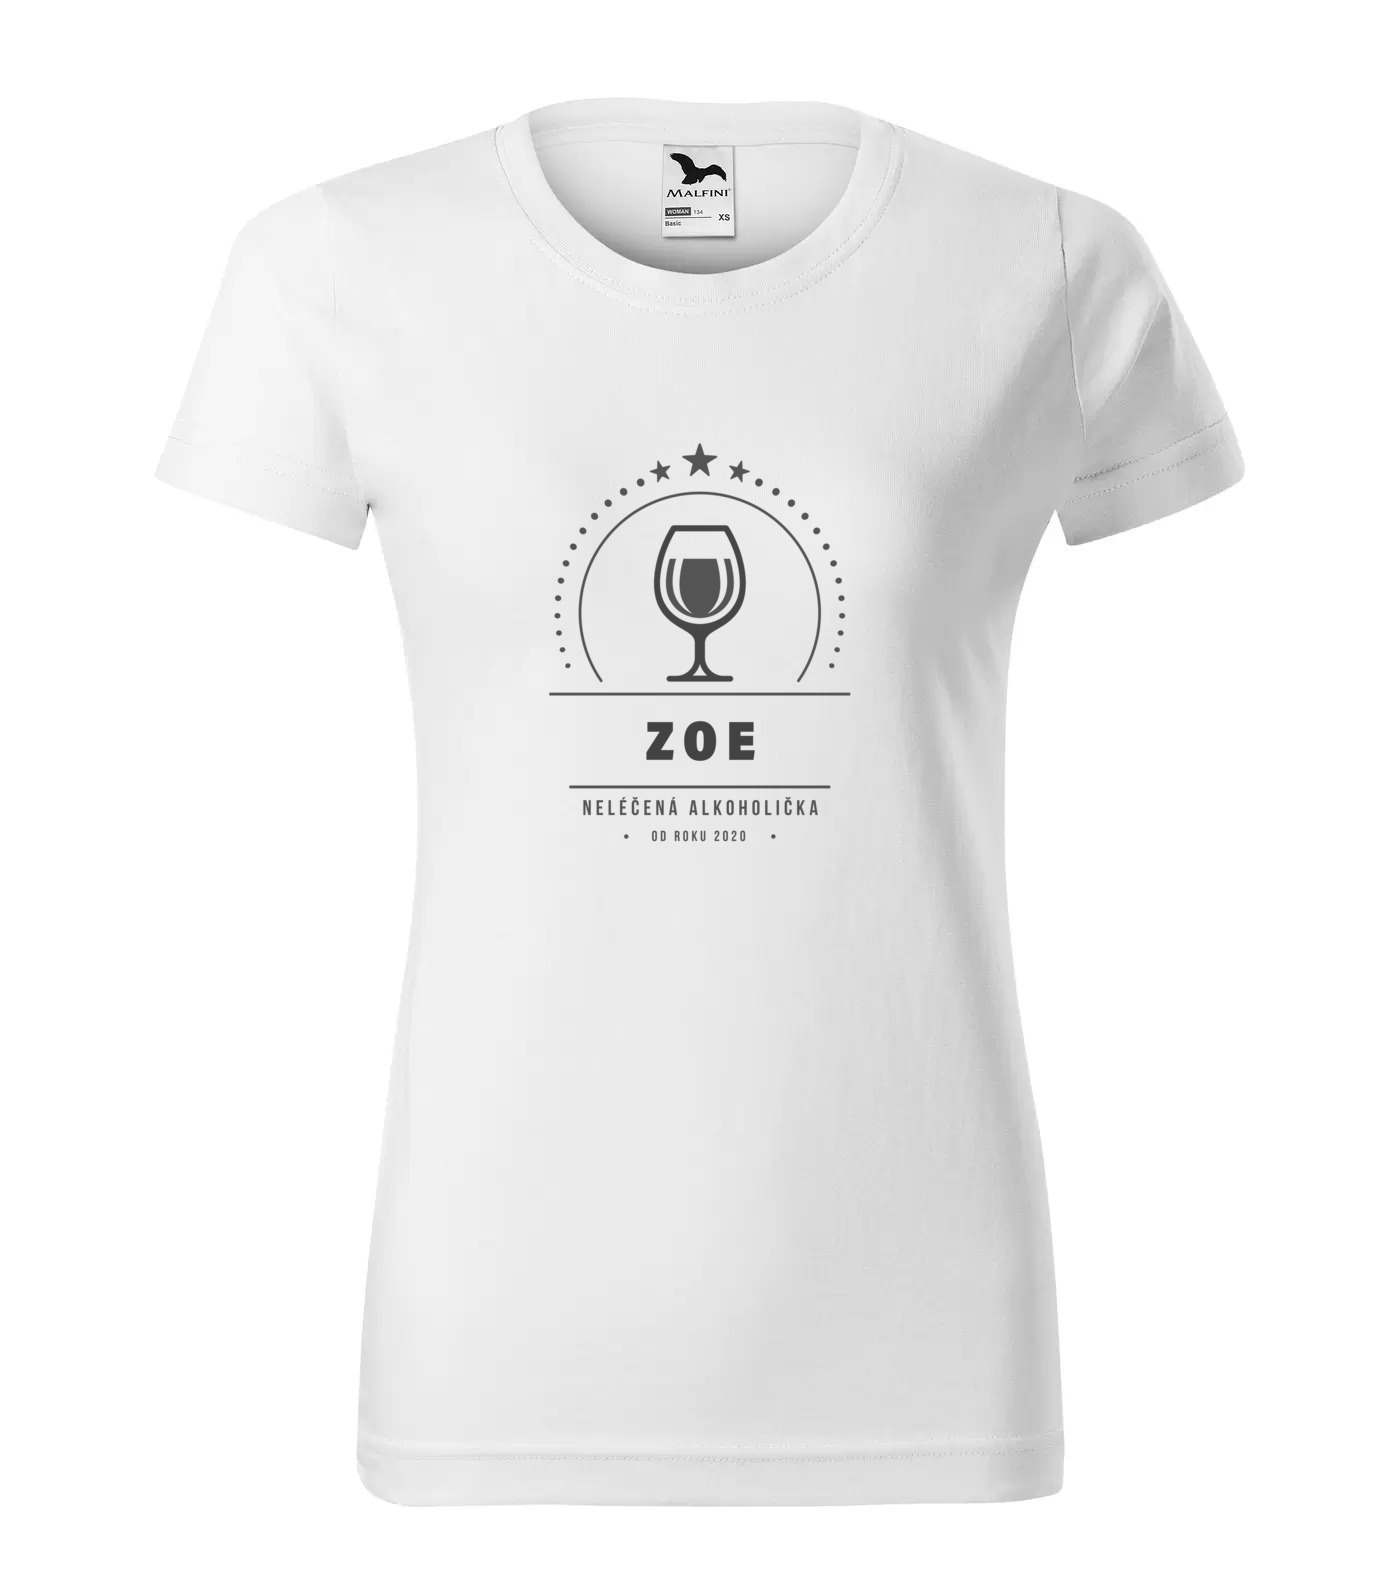 Tričko Alkoholička Zoe